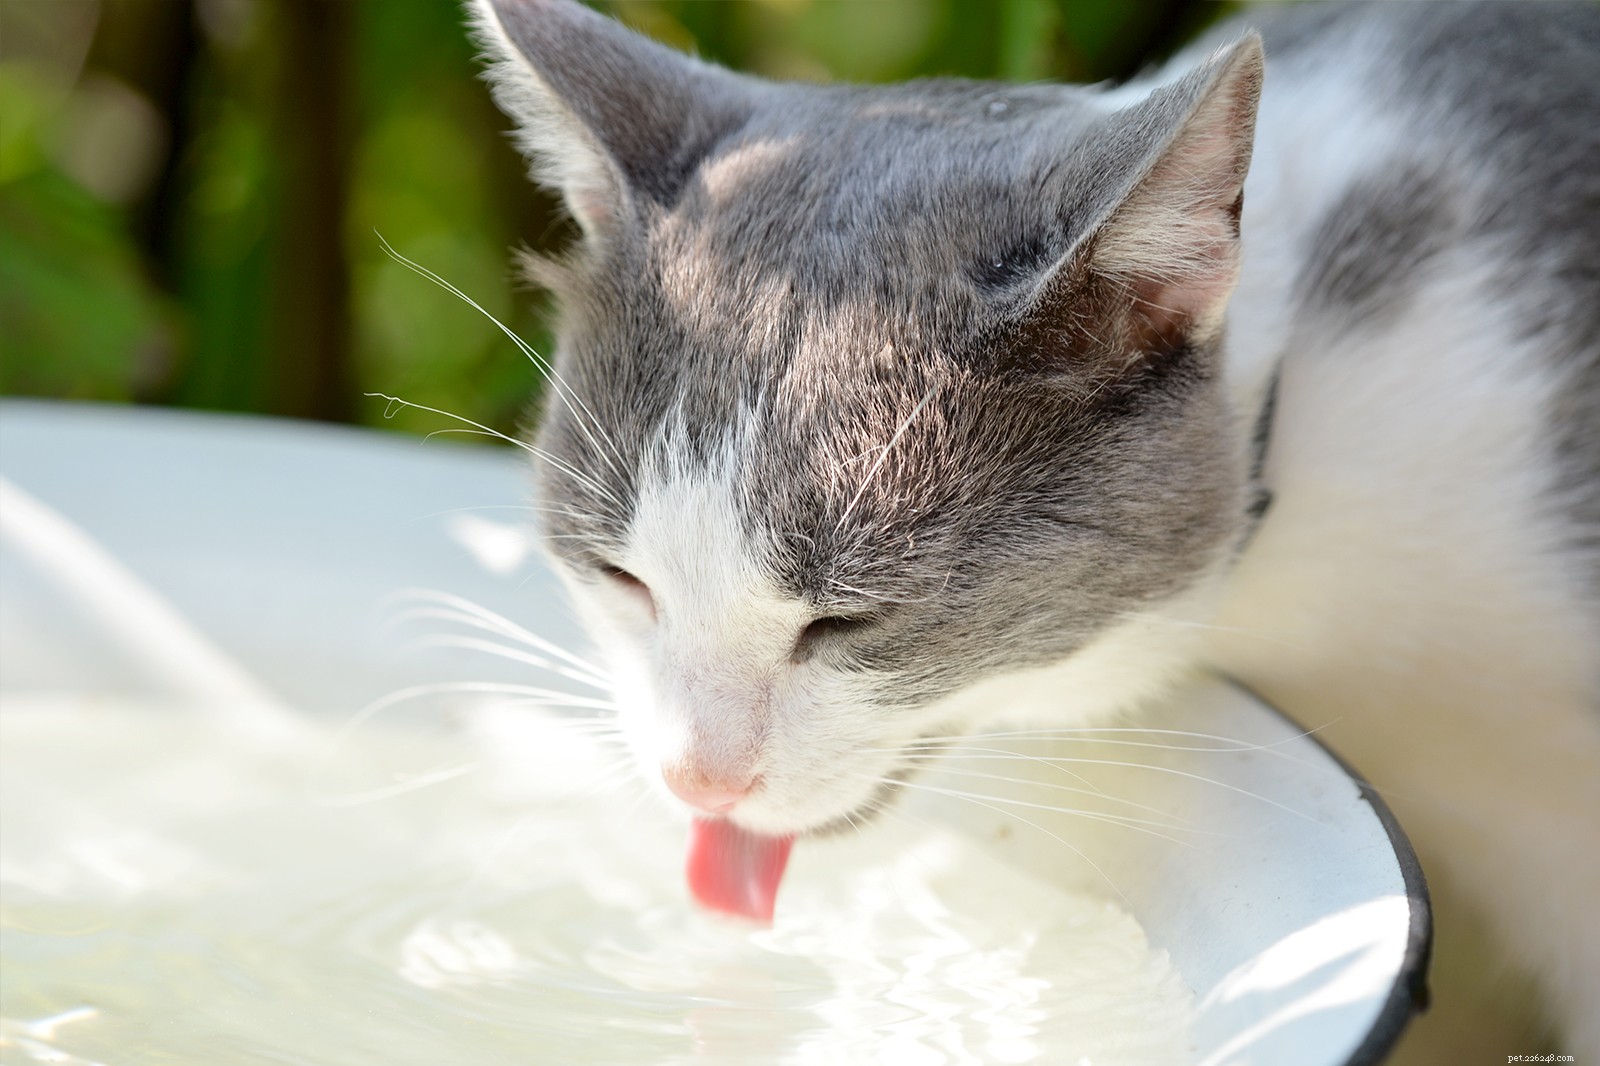 5 façons astucieuses d encourager votre chat à boire plus d eau, selon un vétérinaire